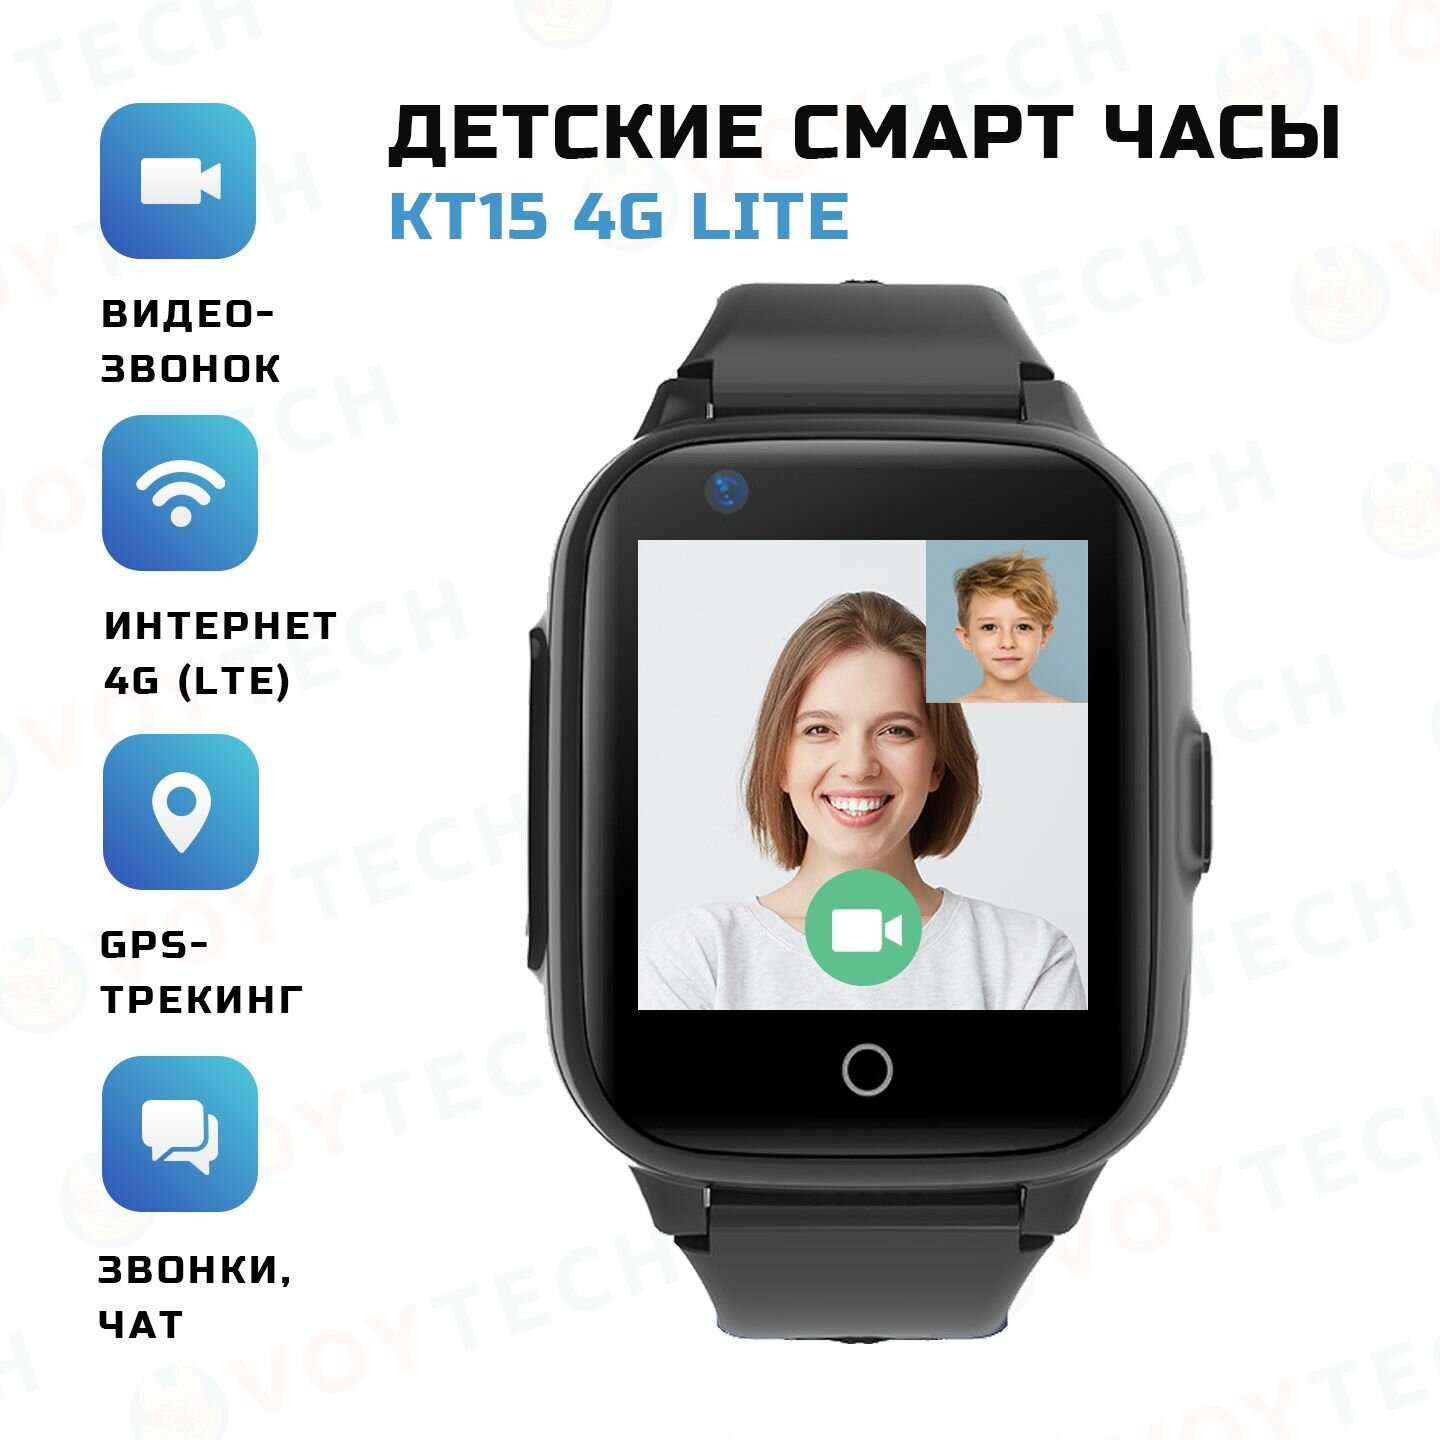 Смарт часы для детей Smart Baby Watch KT15 Lite 4G LTE школьнику детские умные часы с GPS и сим картой в класс смарт-часы с видеозвонком и телефоном для девочки и мальчика в школу черный